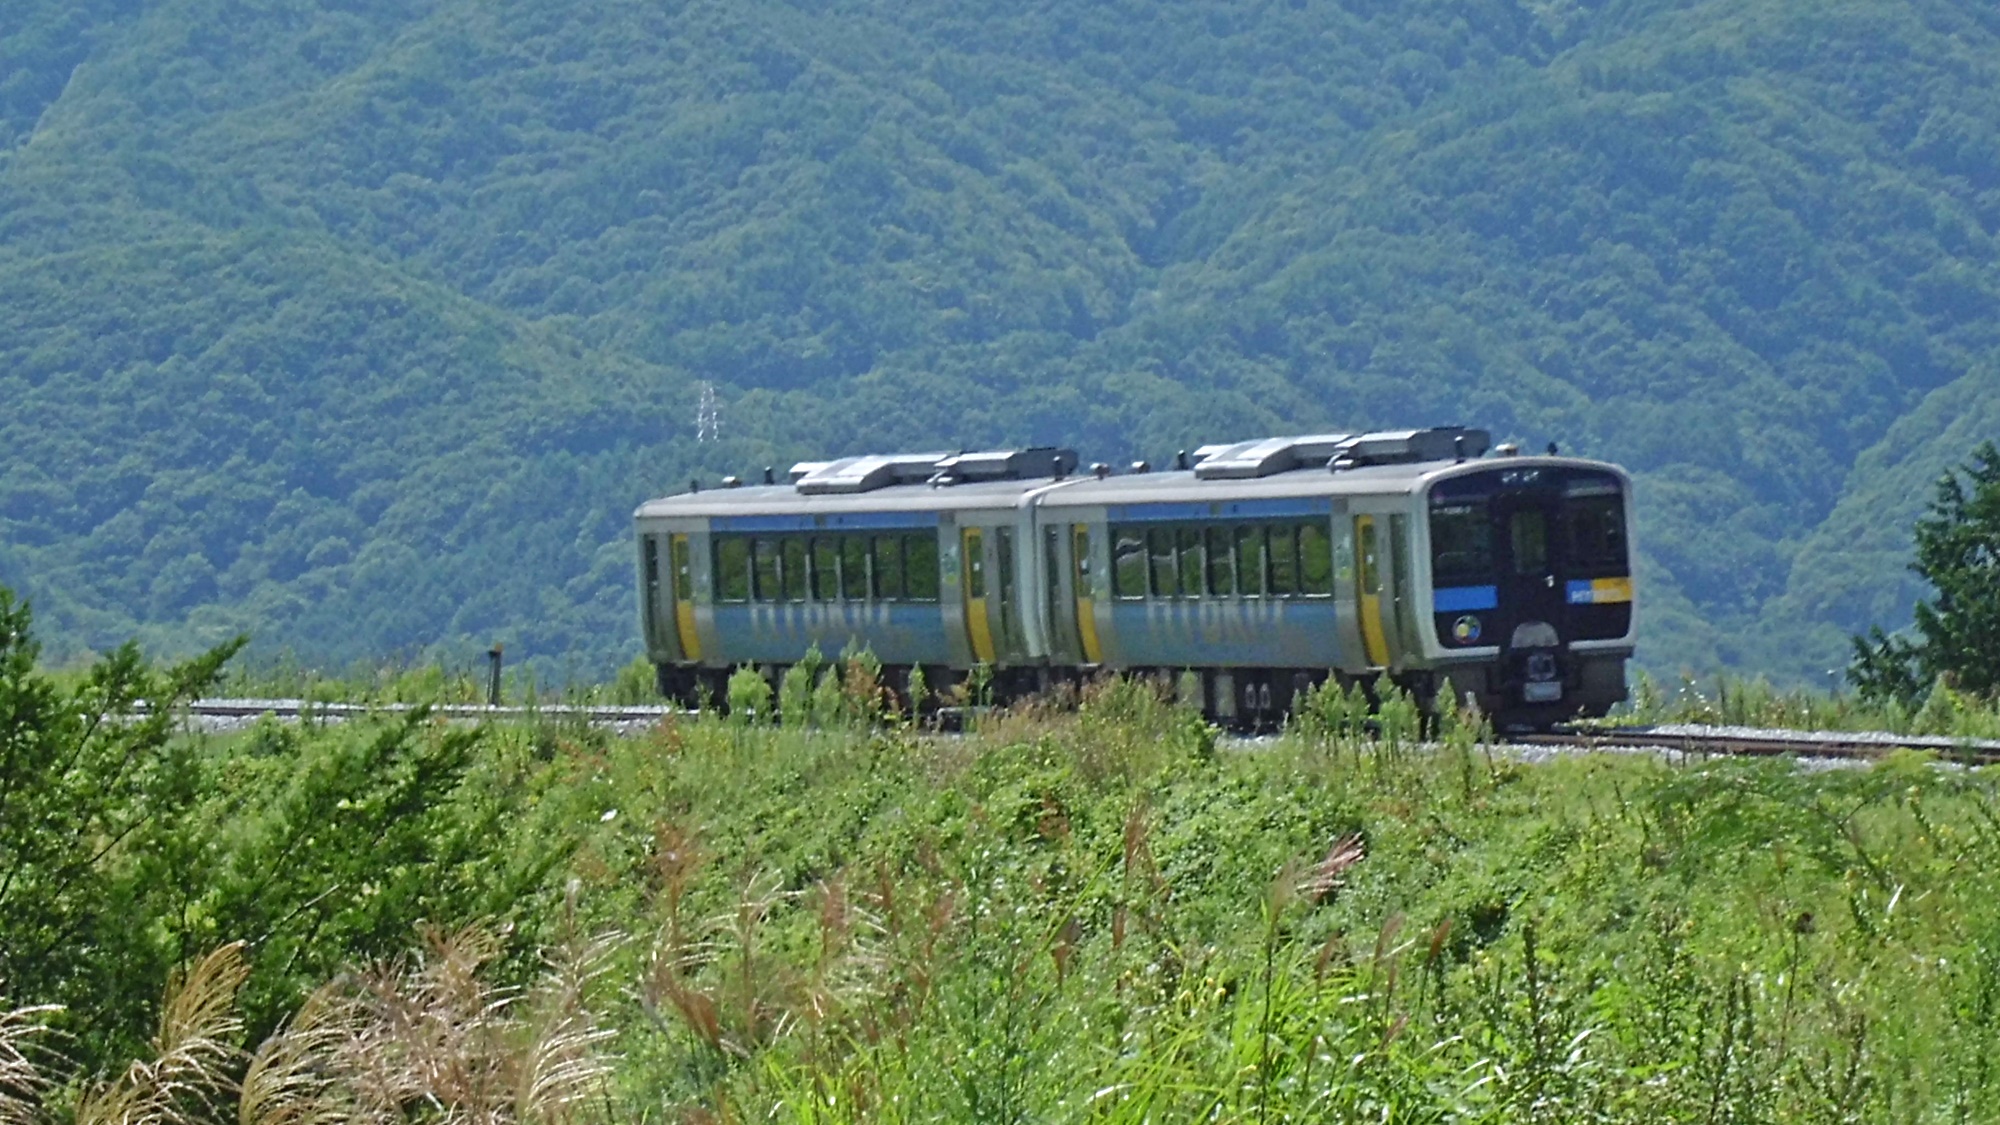 *山の緑と車両の青と黄がよく映える鉄道は、観光の足でもあり、地域住民たちの足でもあります。